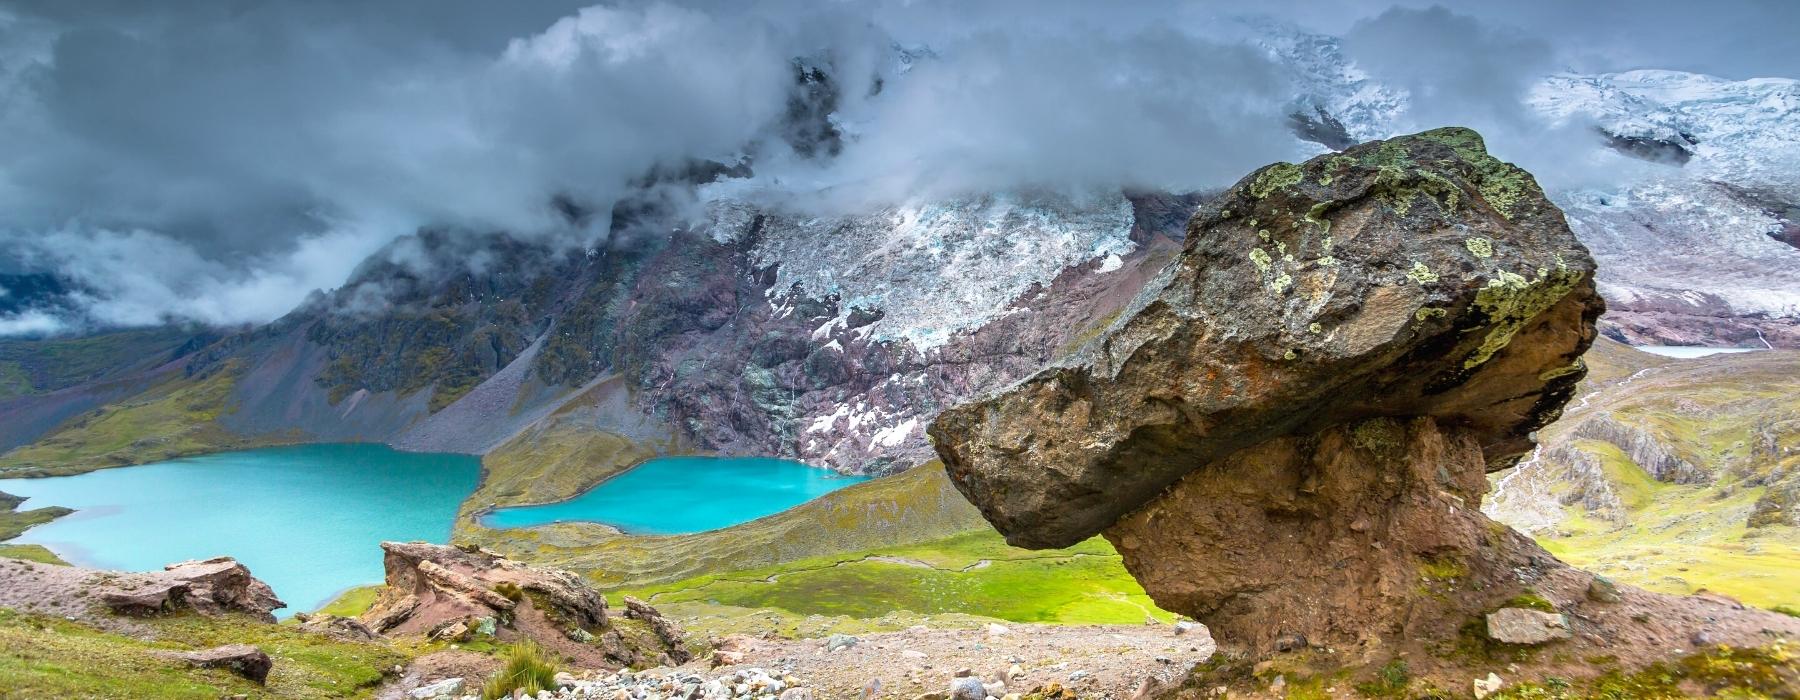 Ausangate Trek Peru und Vinicunca Regenbogen Berge 4 Tage